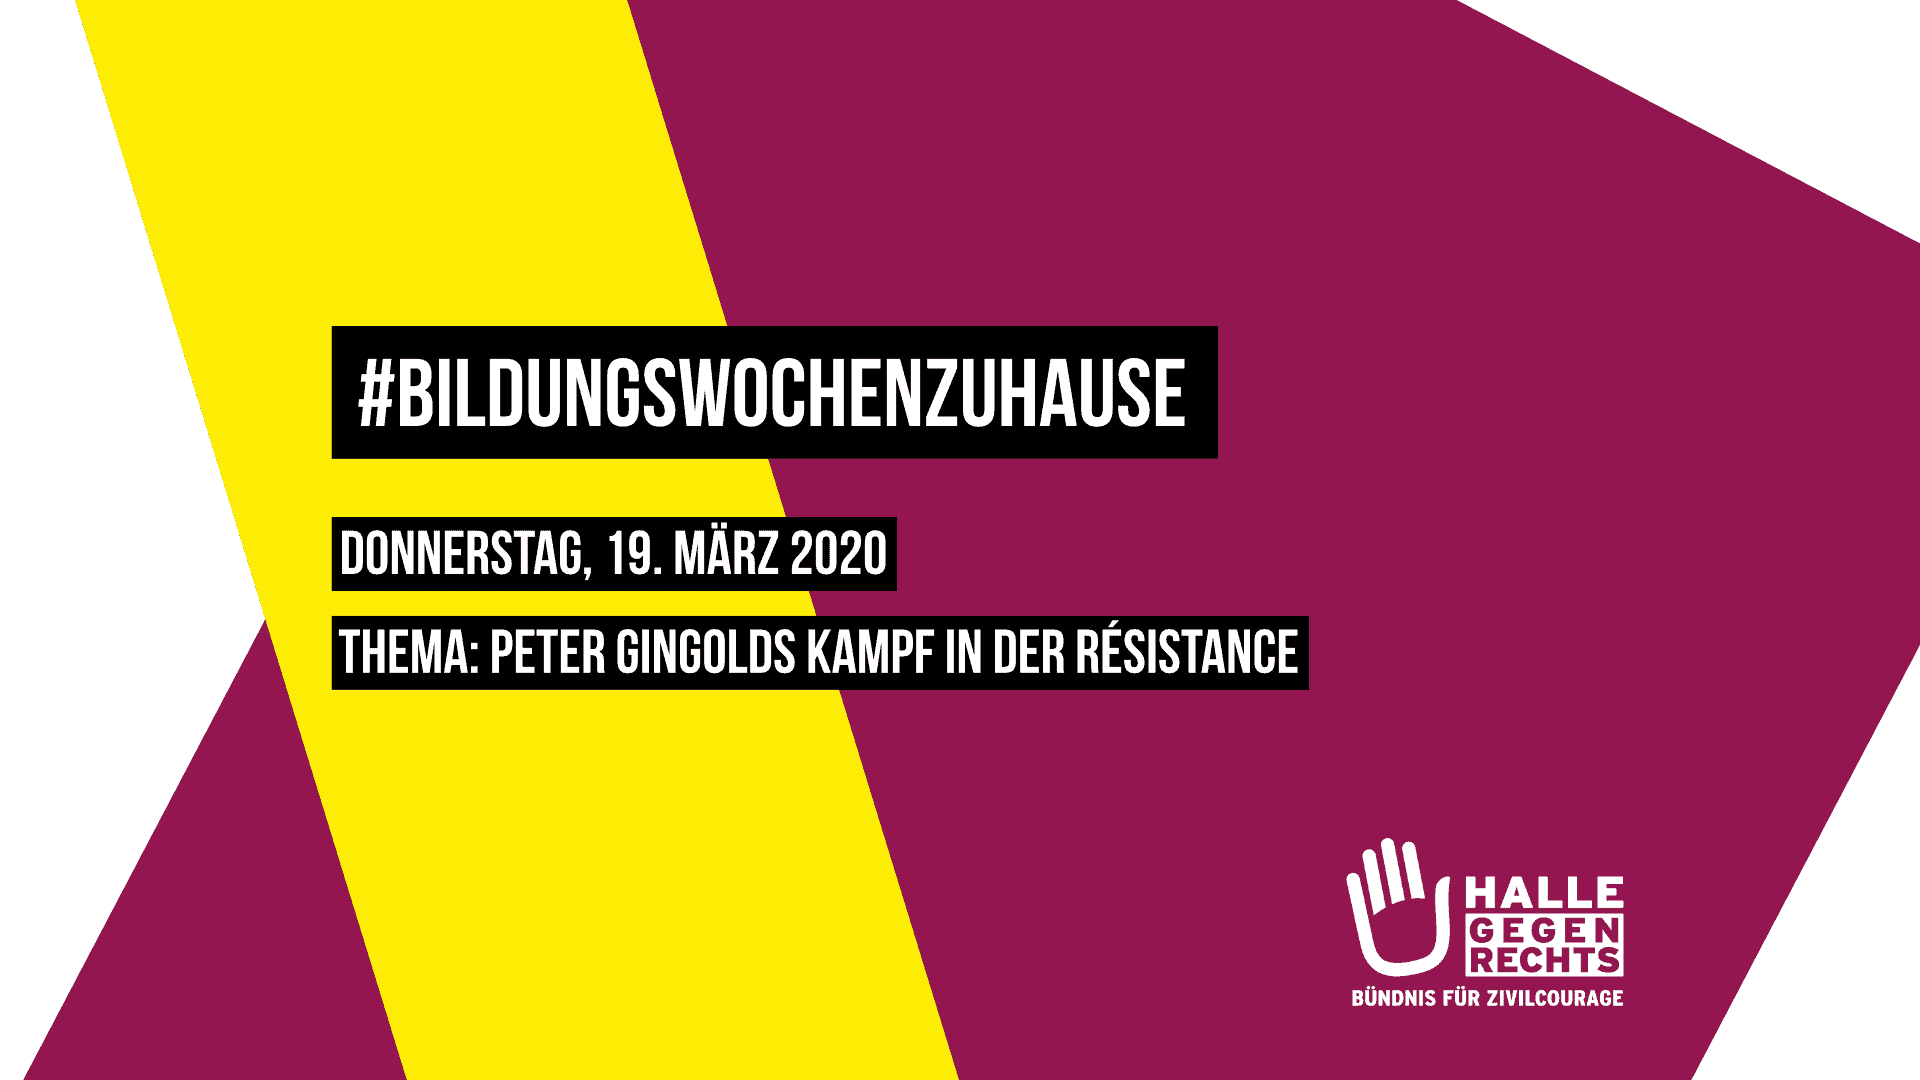 BildungswochenzuHause Donnerstag, 19. März 2020 Thema: Peter Gingolds Kampf in der Résistance, Logo von Halle gegen Rechts, Hintergrund beerenfarben und gelb